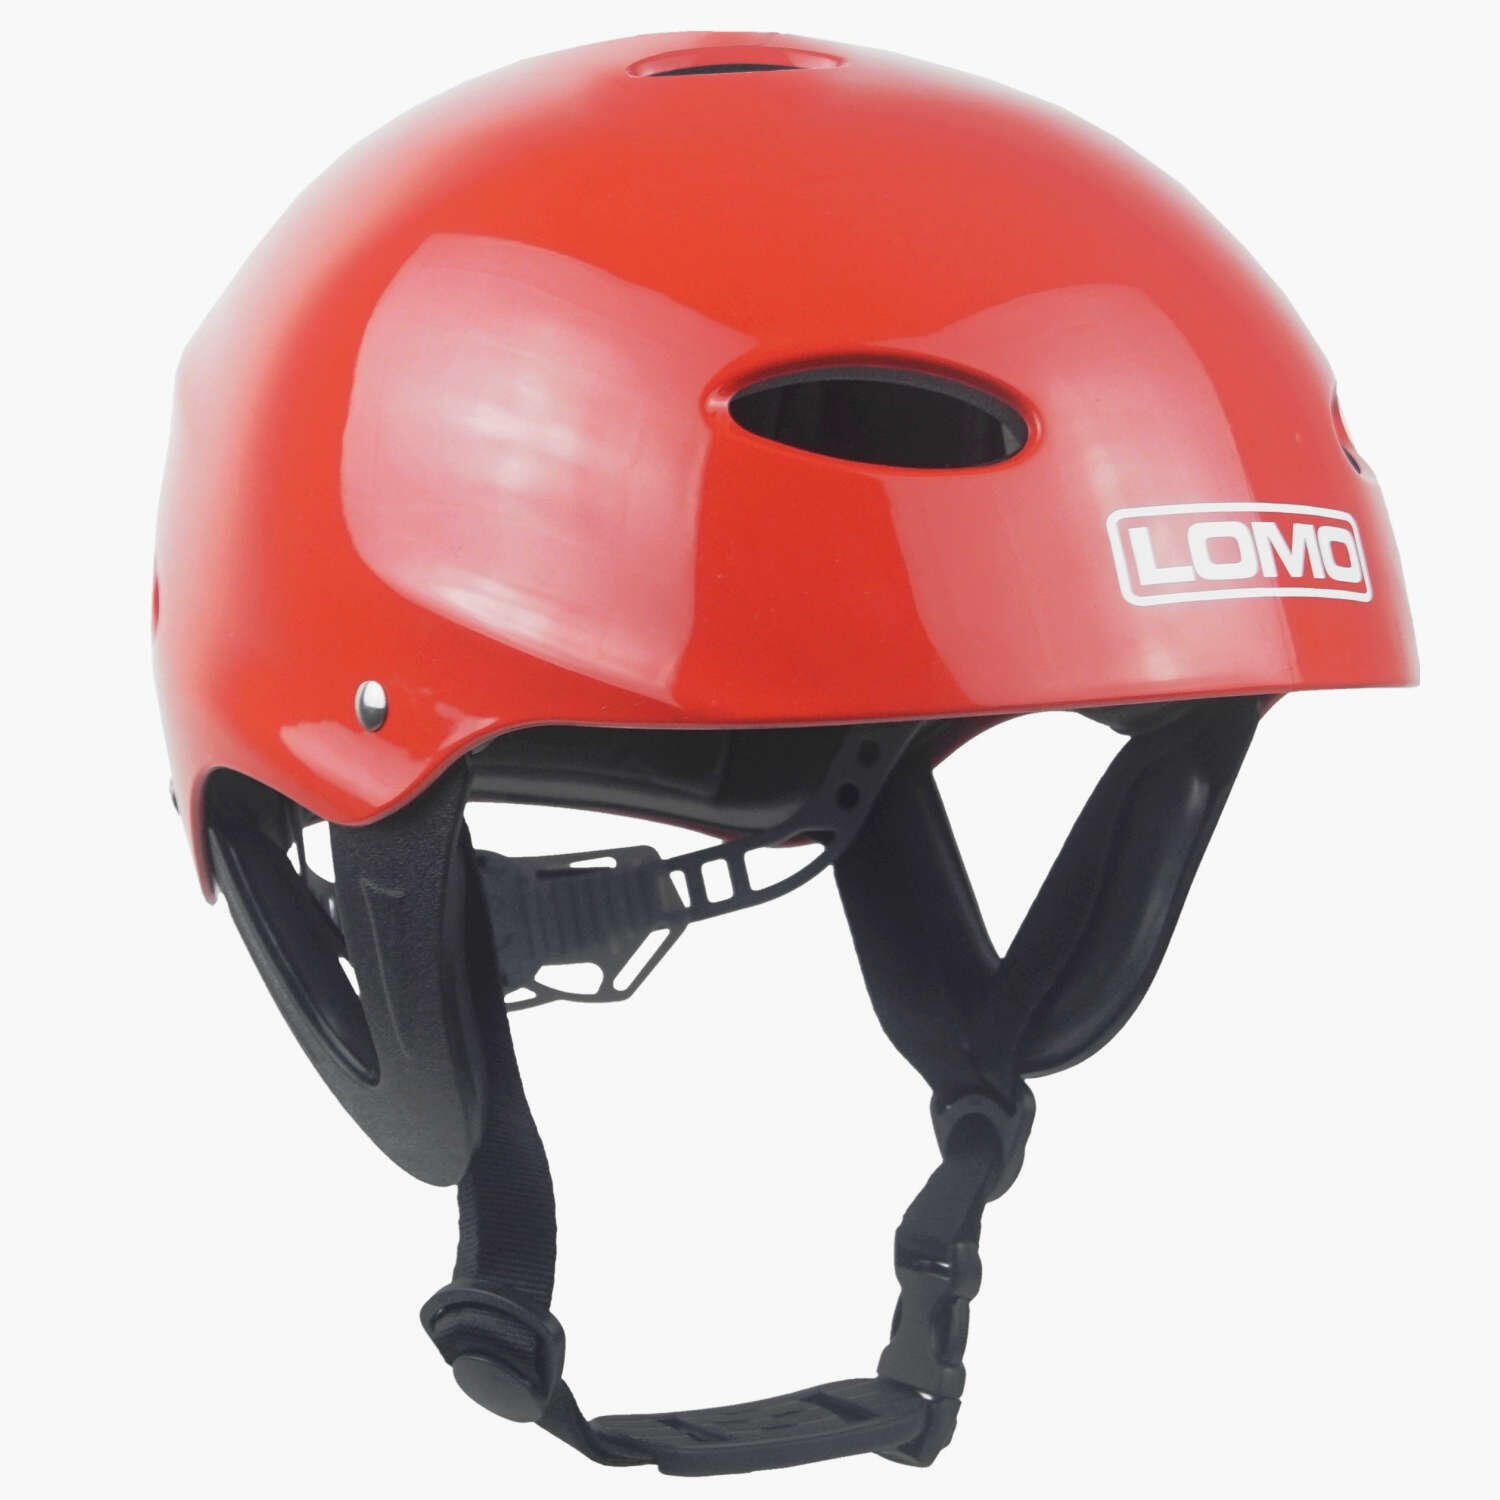 Lomo Kayak Helmet - Red 1/4